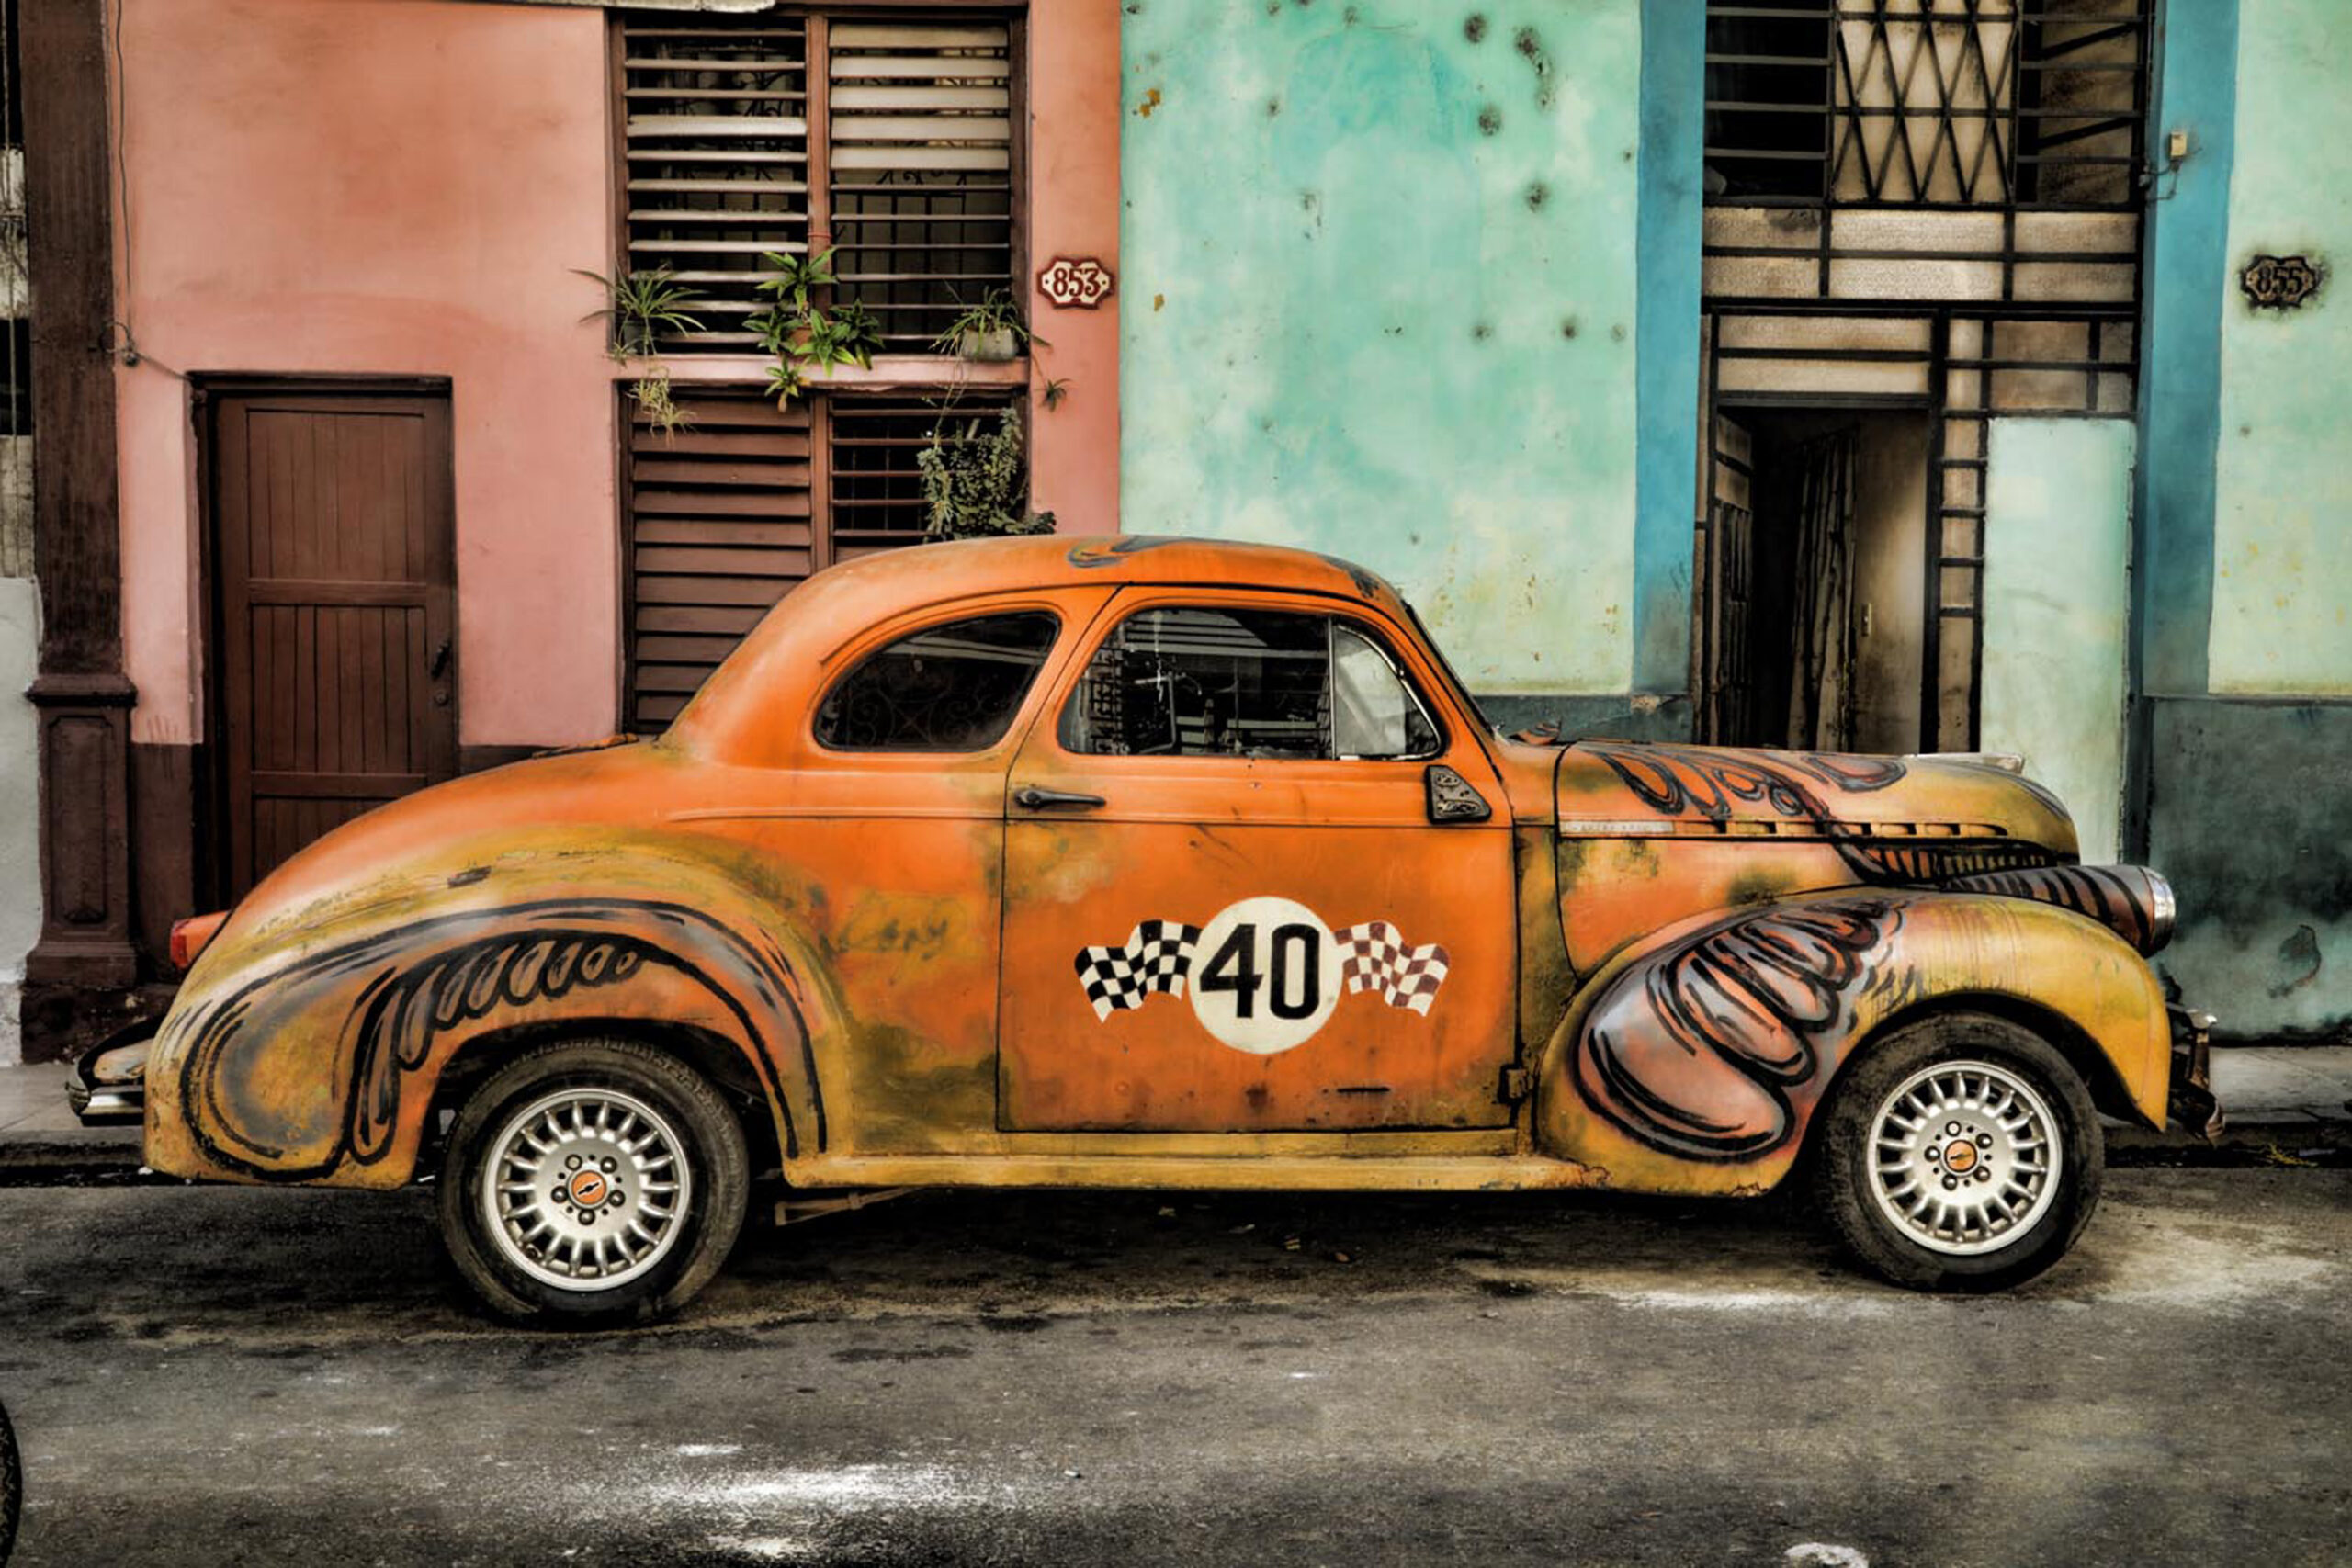 Cuba, classic car, photography workshop, pastel colors, orange antique car, fisheye connect, atlanta photography workshop, vintage car